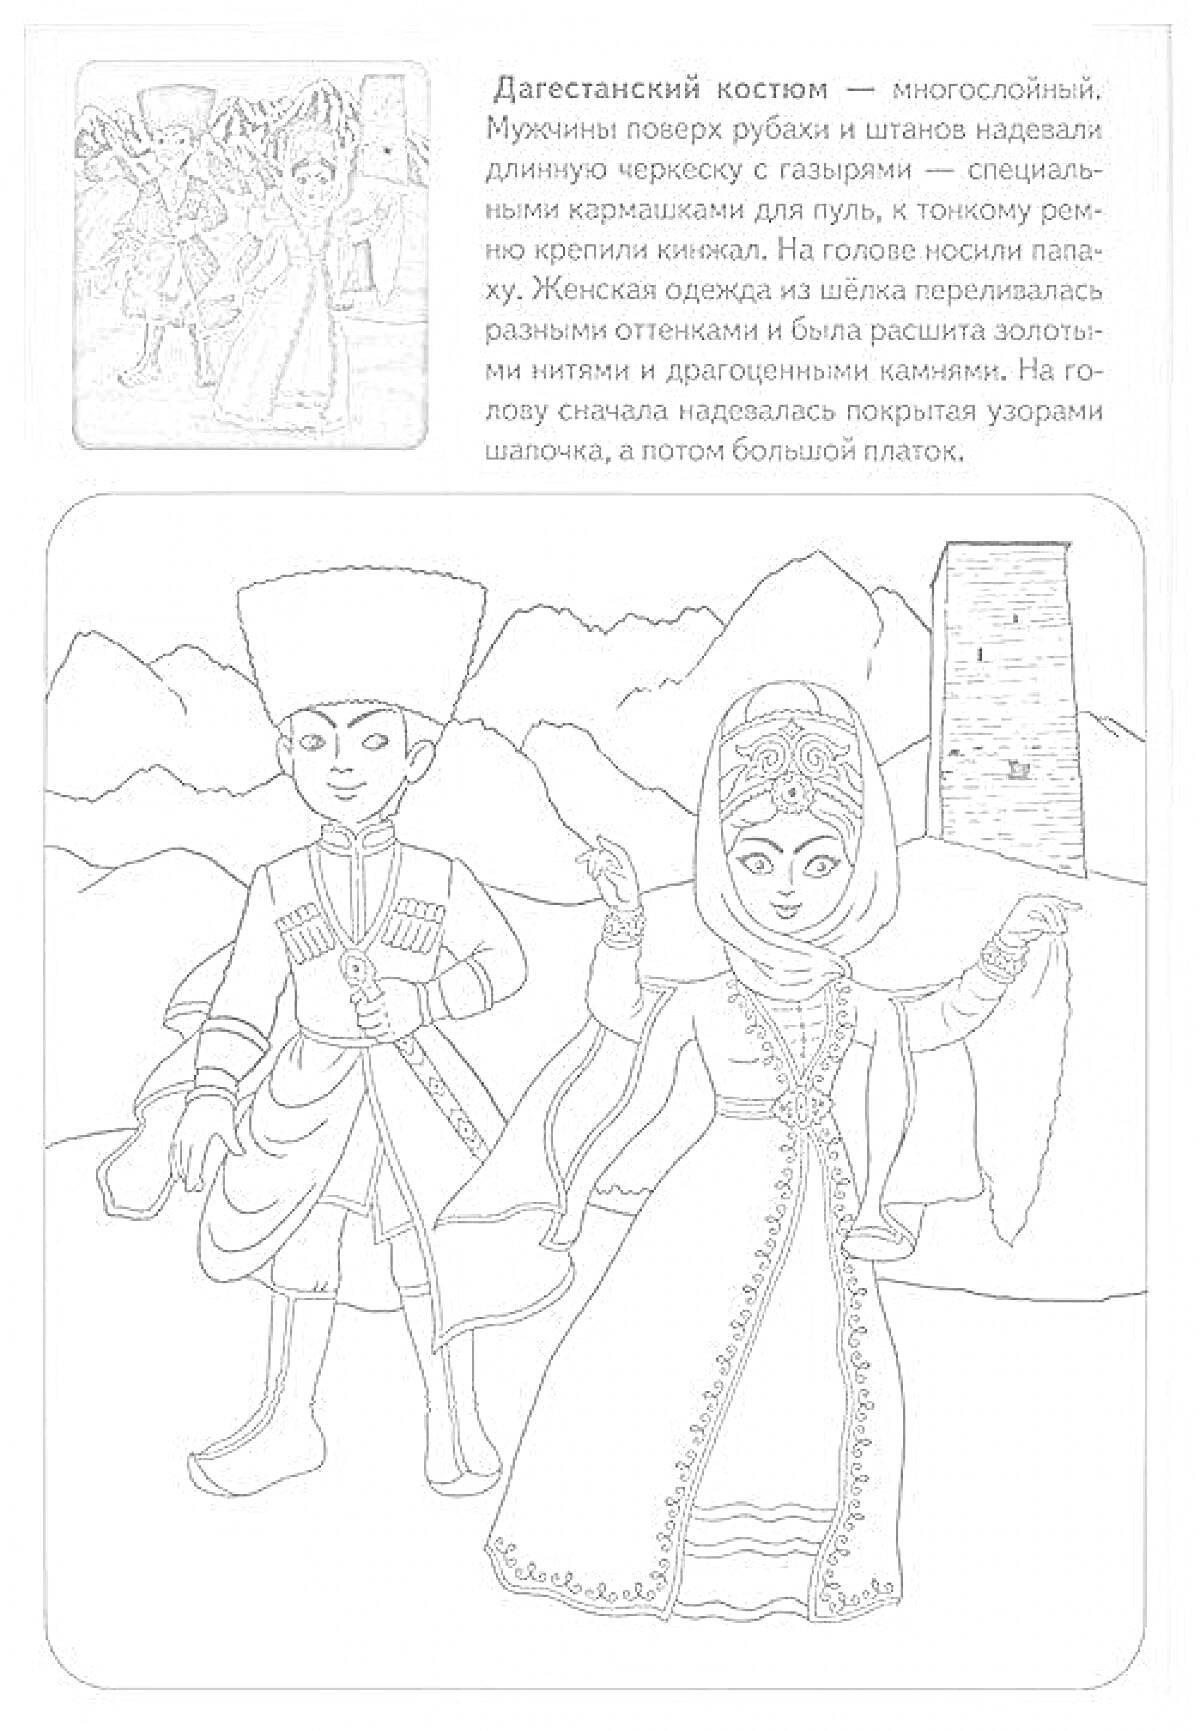 Дагестанский национальный костюм, включающий мужскую и женскую одежду. Мужской костюм состоит из черкески с газырями, папахи и сапог. Женский костюм включает длинное платье, расшитое узорами, пояс, накидку и головной убор, закрывающий волосы.